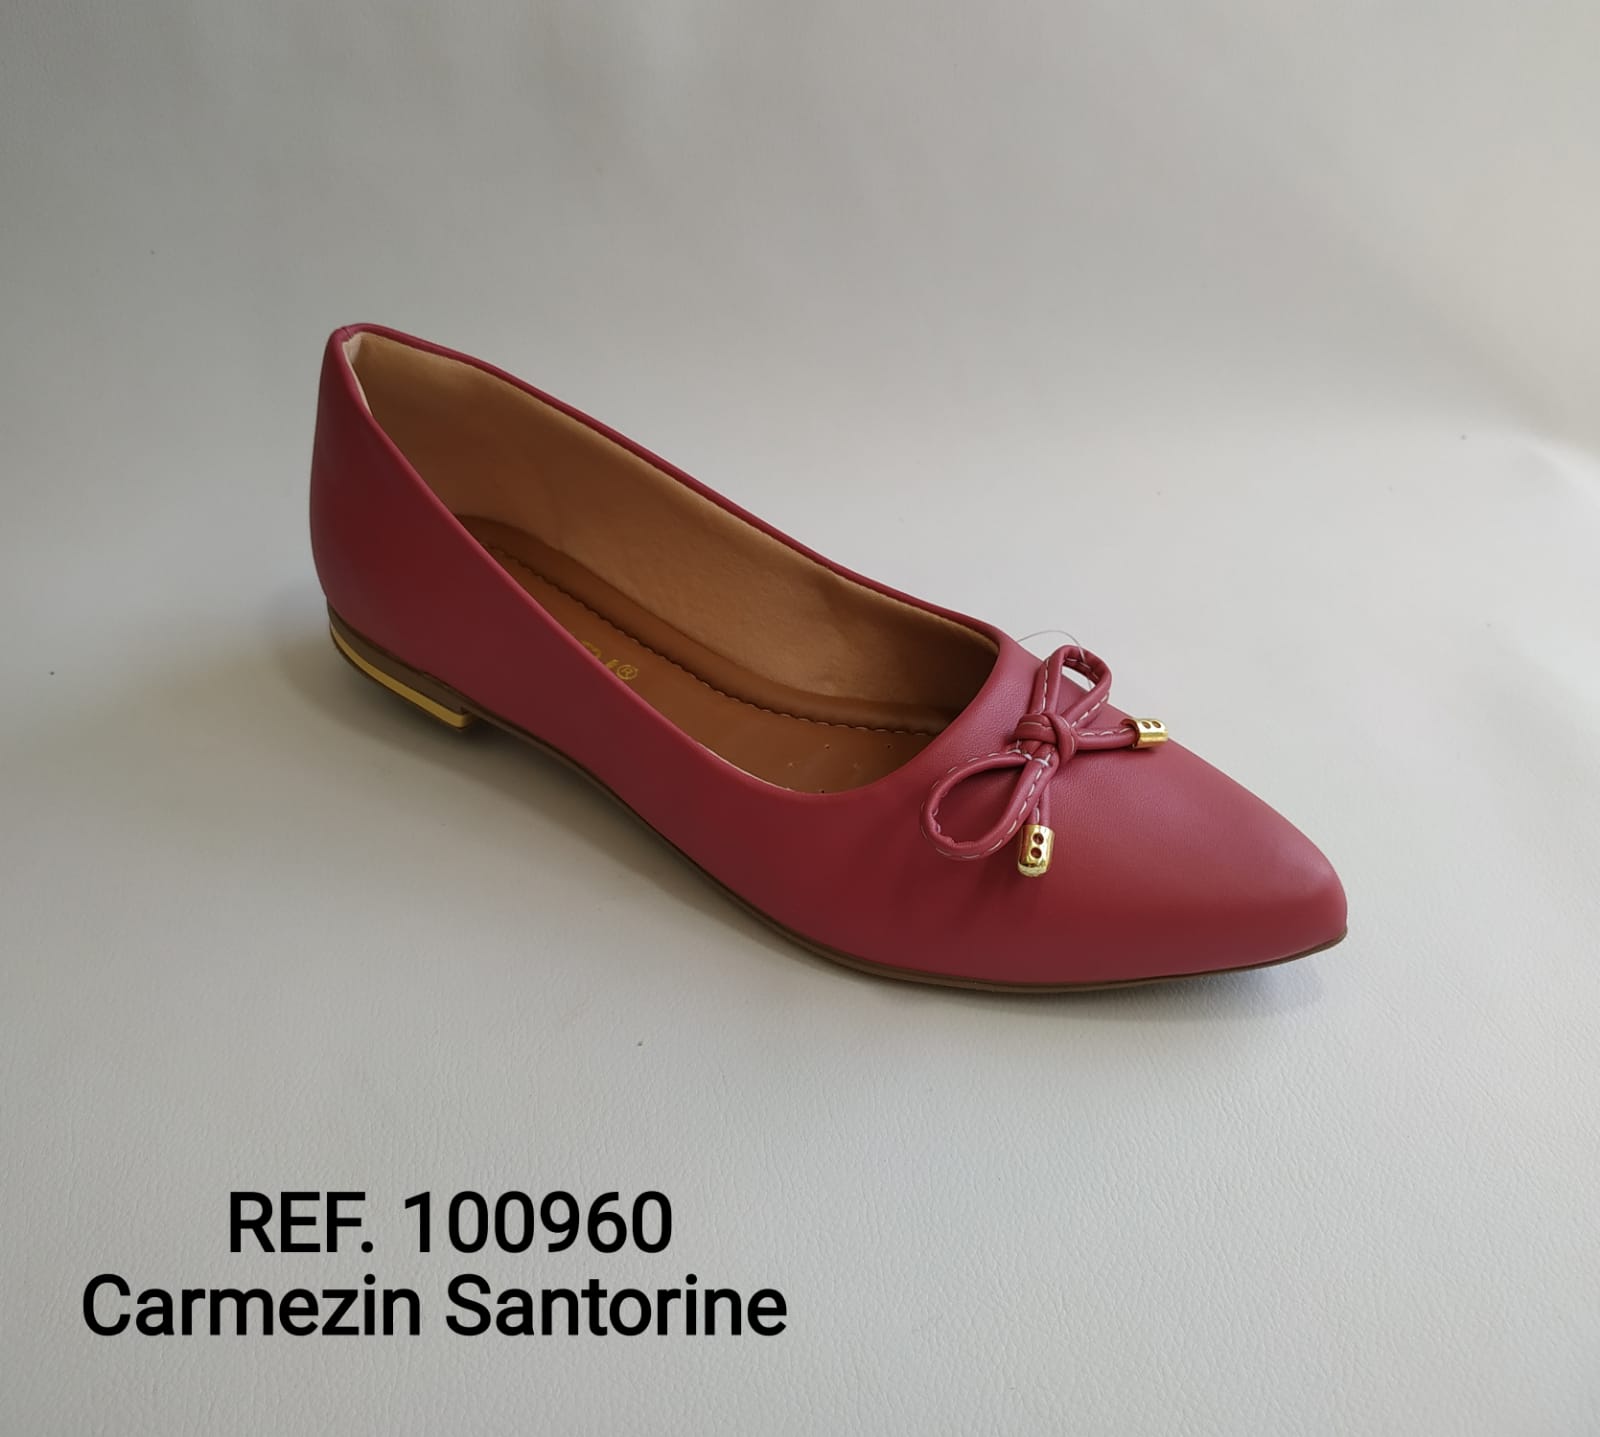 Ref. 100960 Carmezin Santorine